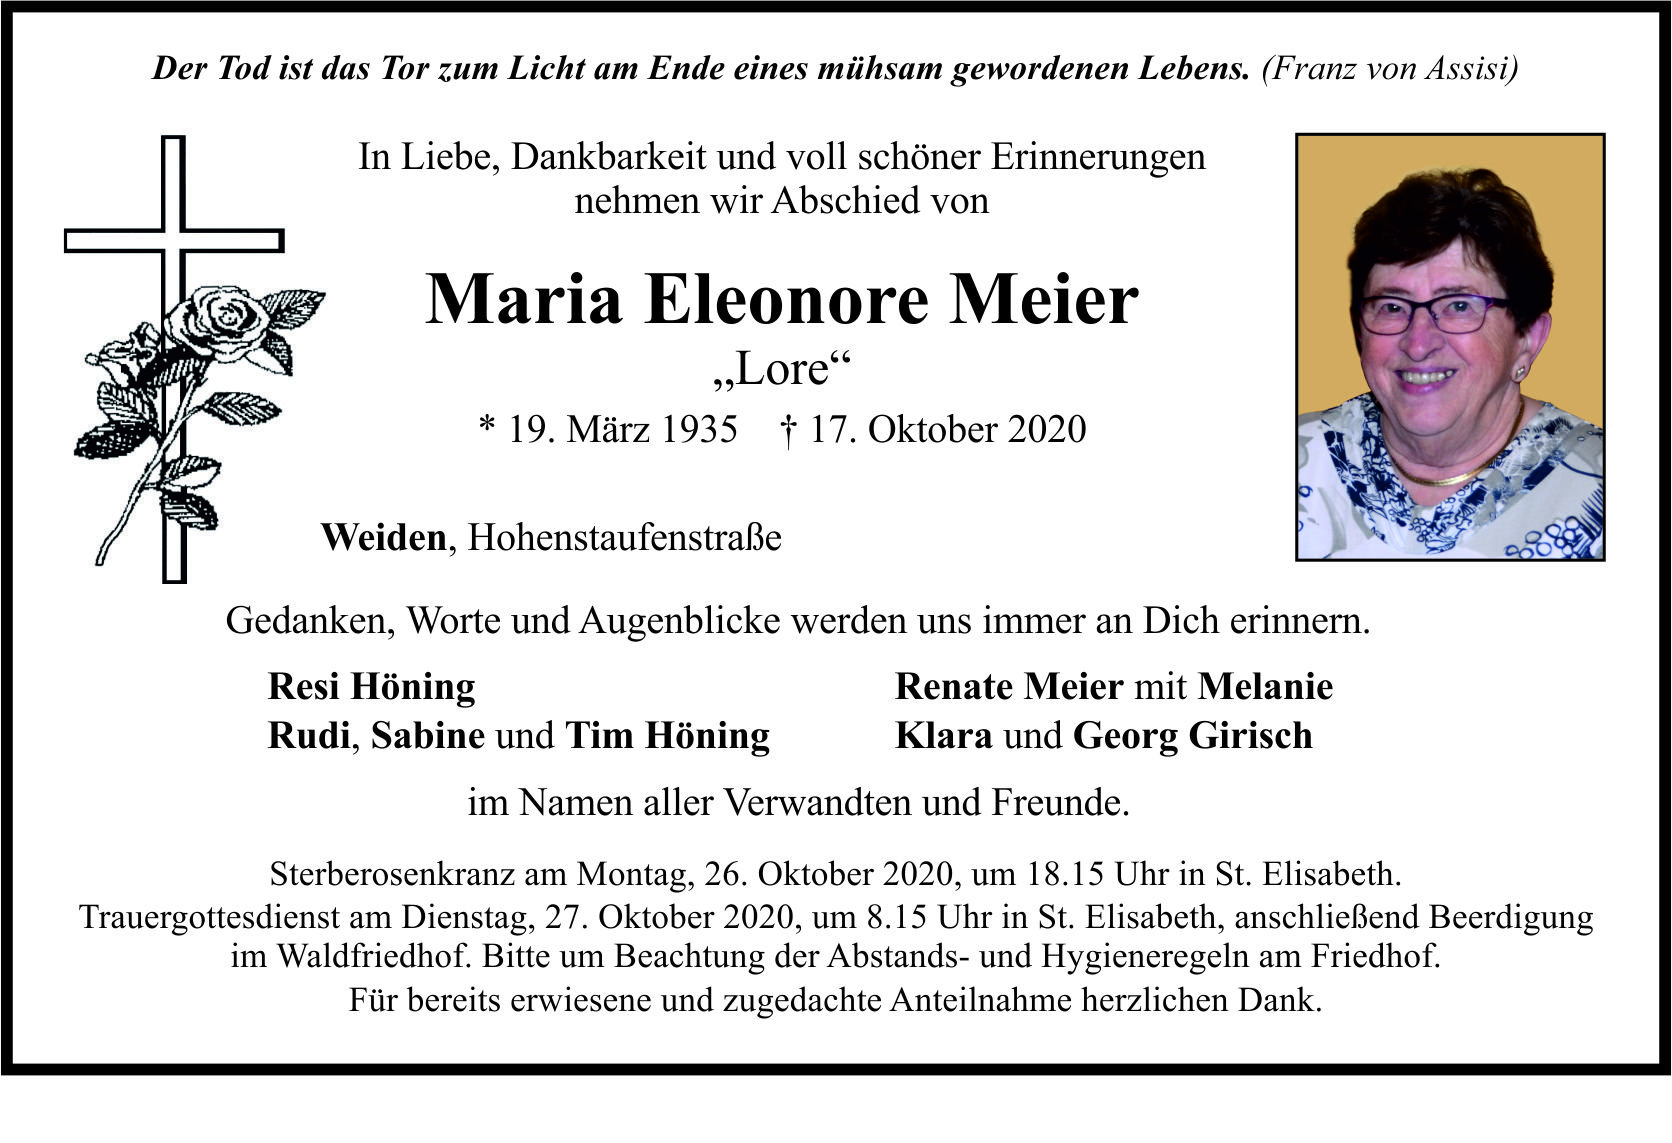 Traueranzeige Maria Eleonore Meier, Weiden